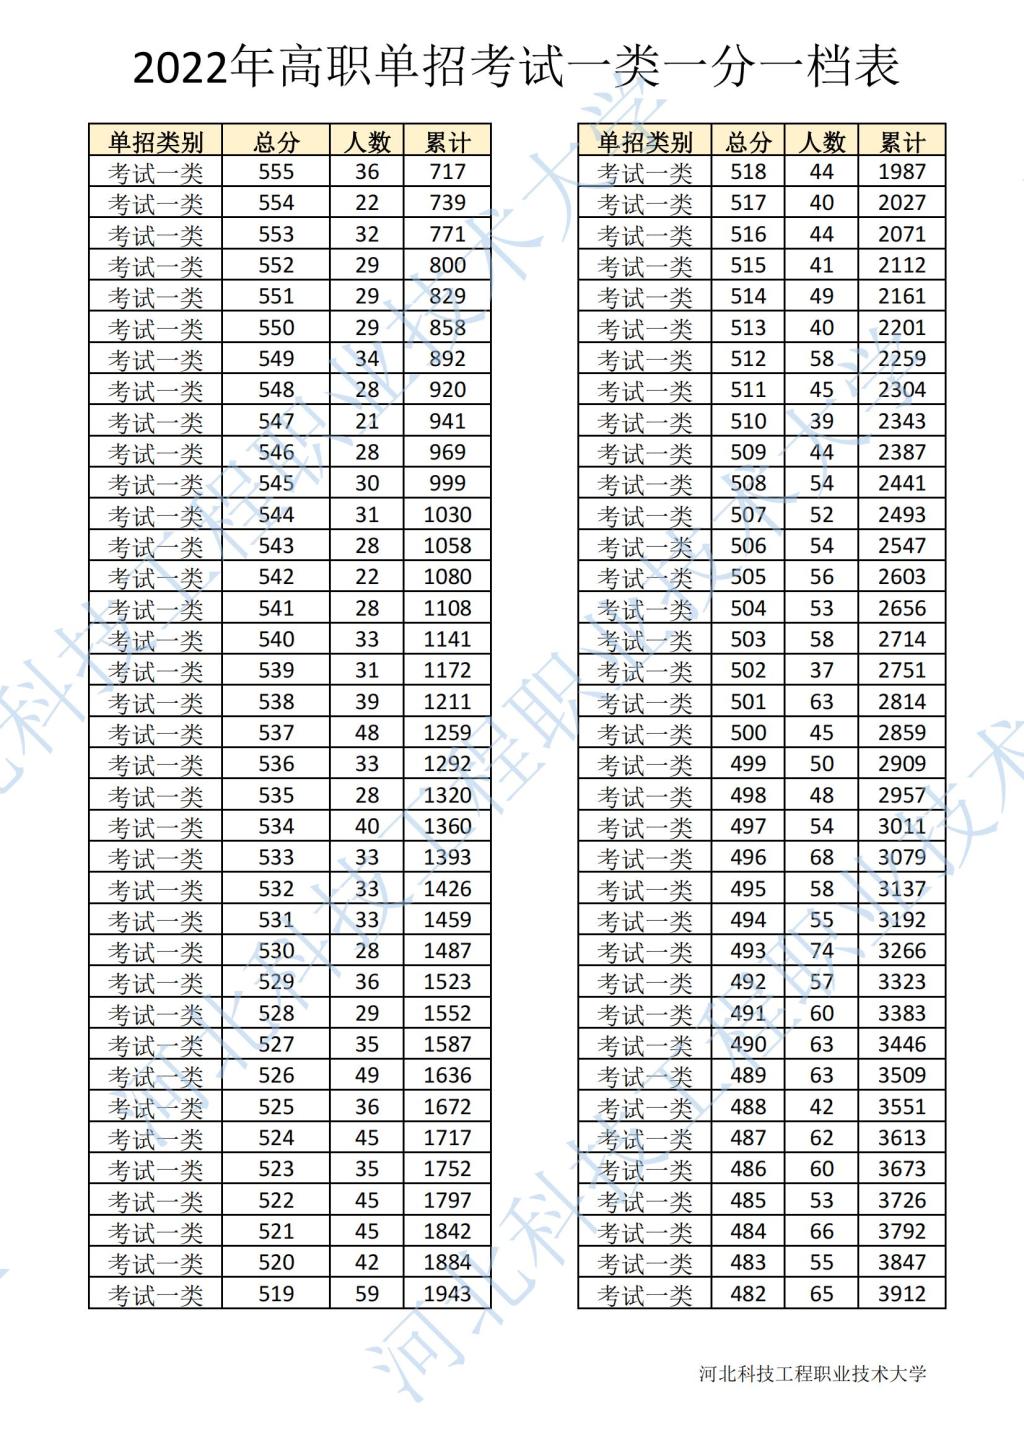 2022年河北省高职单招考试一类一分一档表 图2